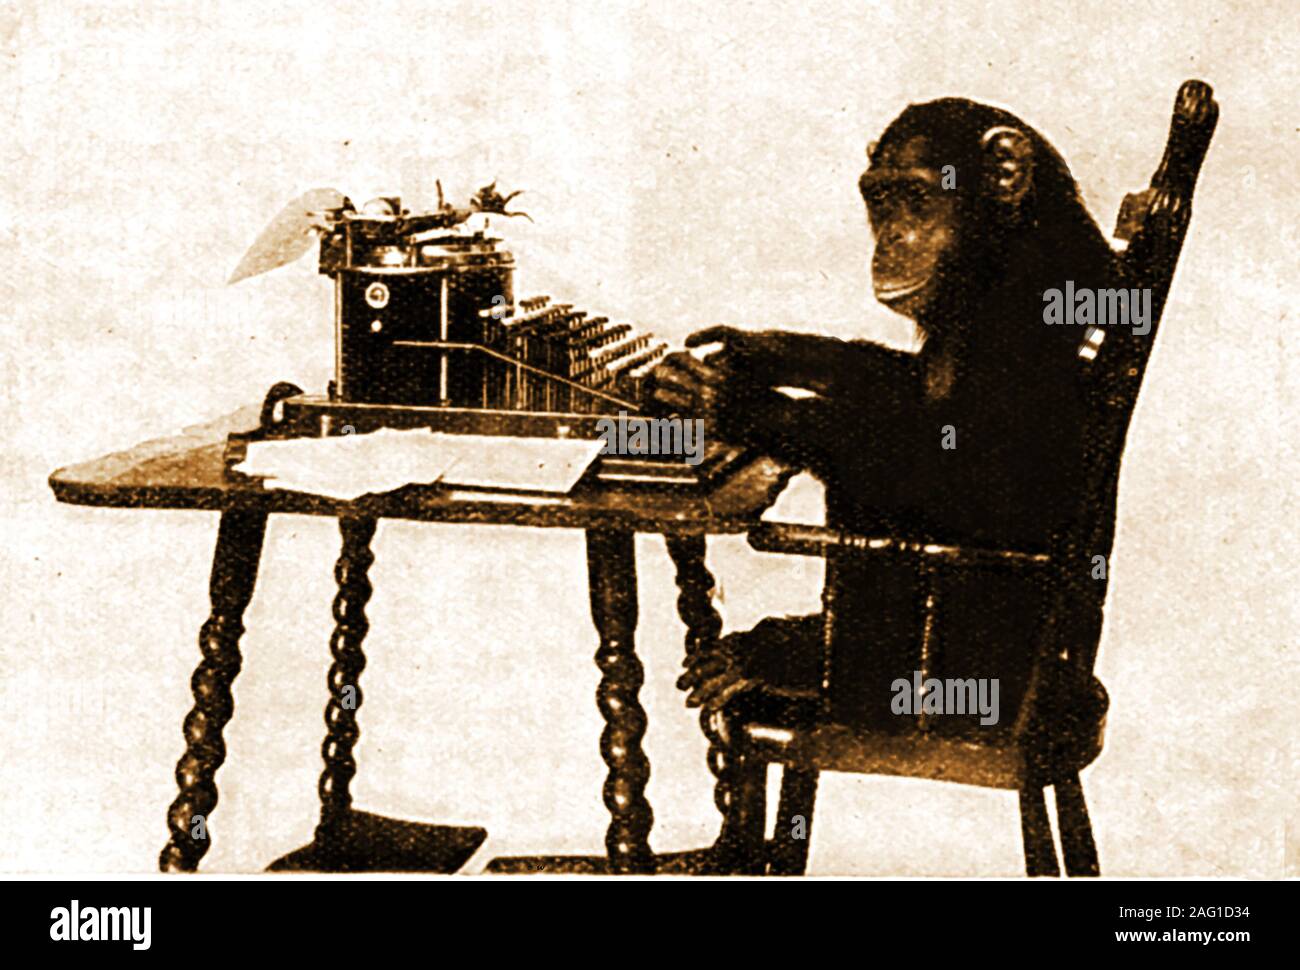 Une image des années 30 d'un chimpanzé à l'aide d'une machine à écrire, d'illustrer la métaphore du singe qui en théorie par laquelle un singe de frapper au hasard des touches sur un clavier de machine à écrire pour une quantité infinie de temps vont presque certainement n'importe quel type de texte, même une œuvre de Shakespeare Banque D'Images